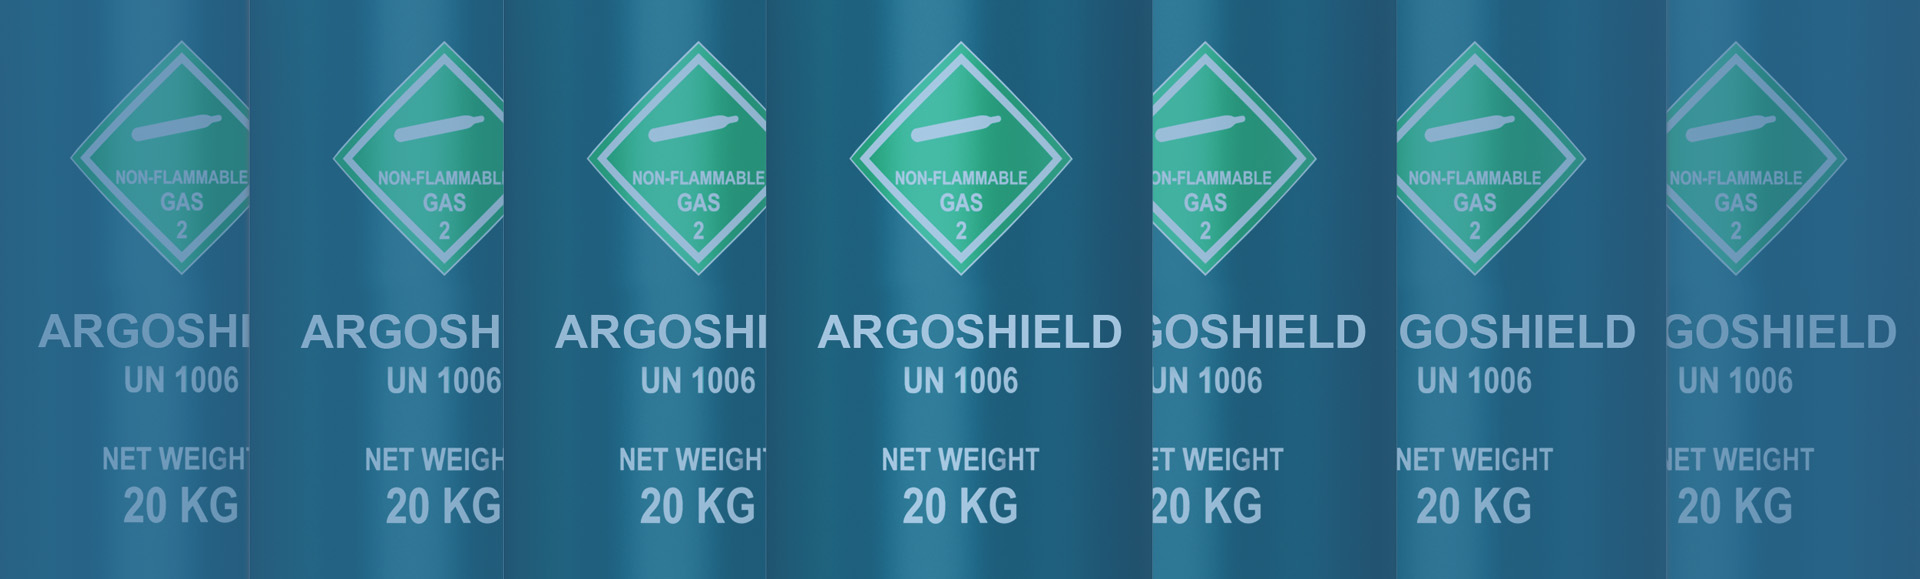 IMG - Buy ArgoShield Gas Seychelles